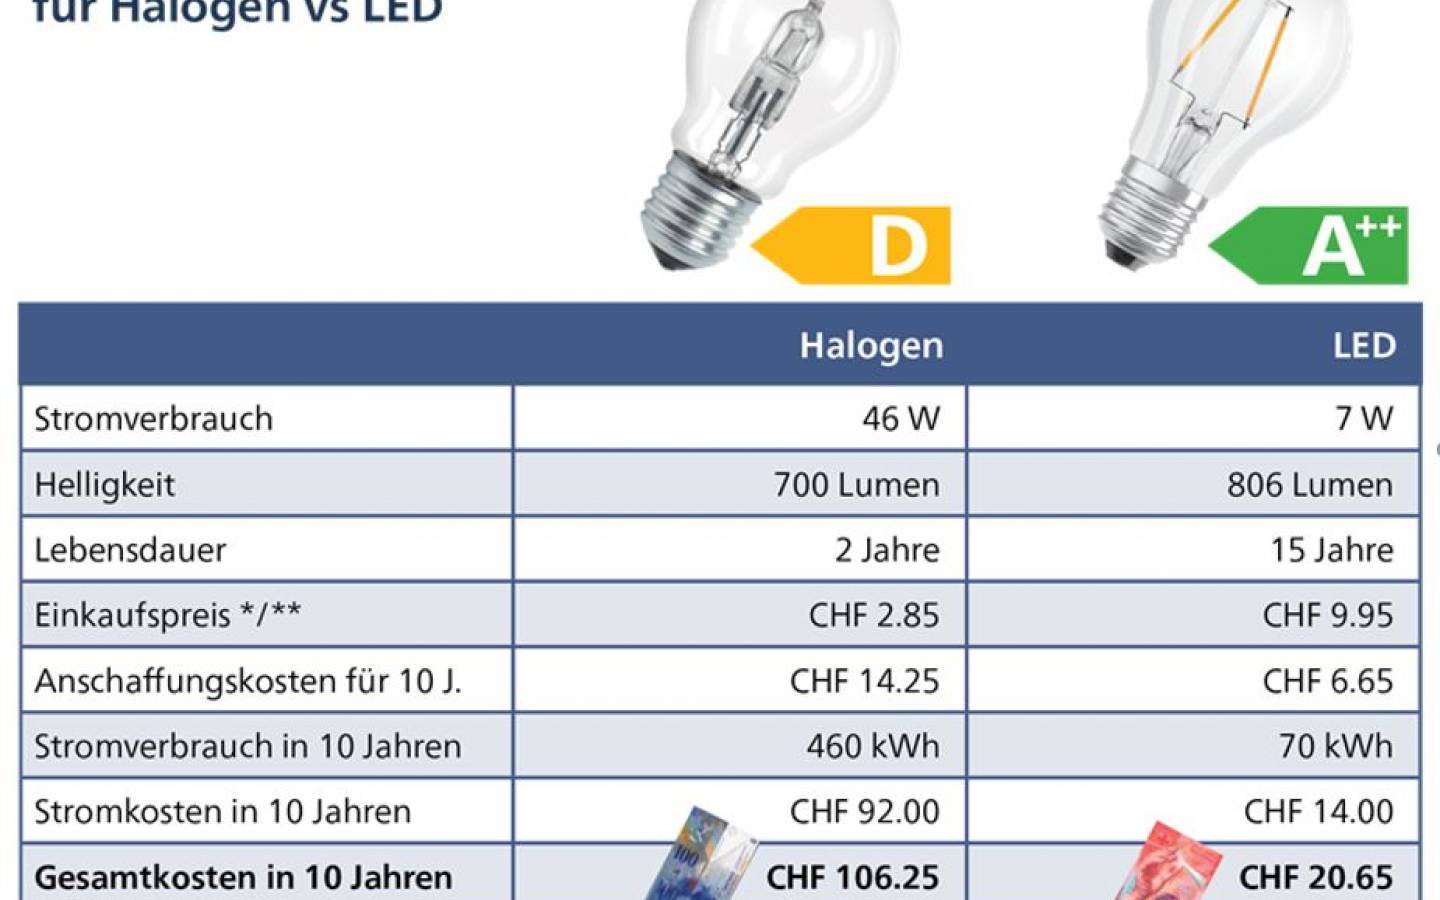 Interdiction de l'halogène, faut-il passer aux ampoules LED ? - ONLEDS